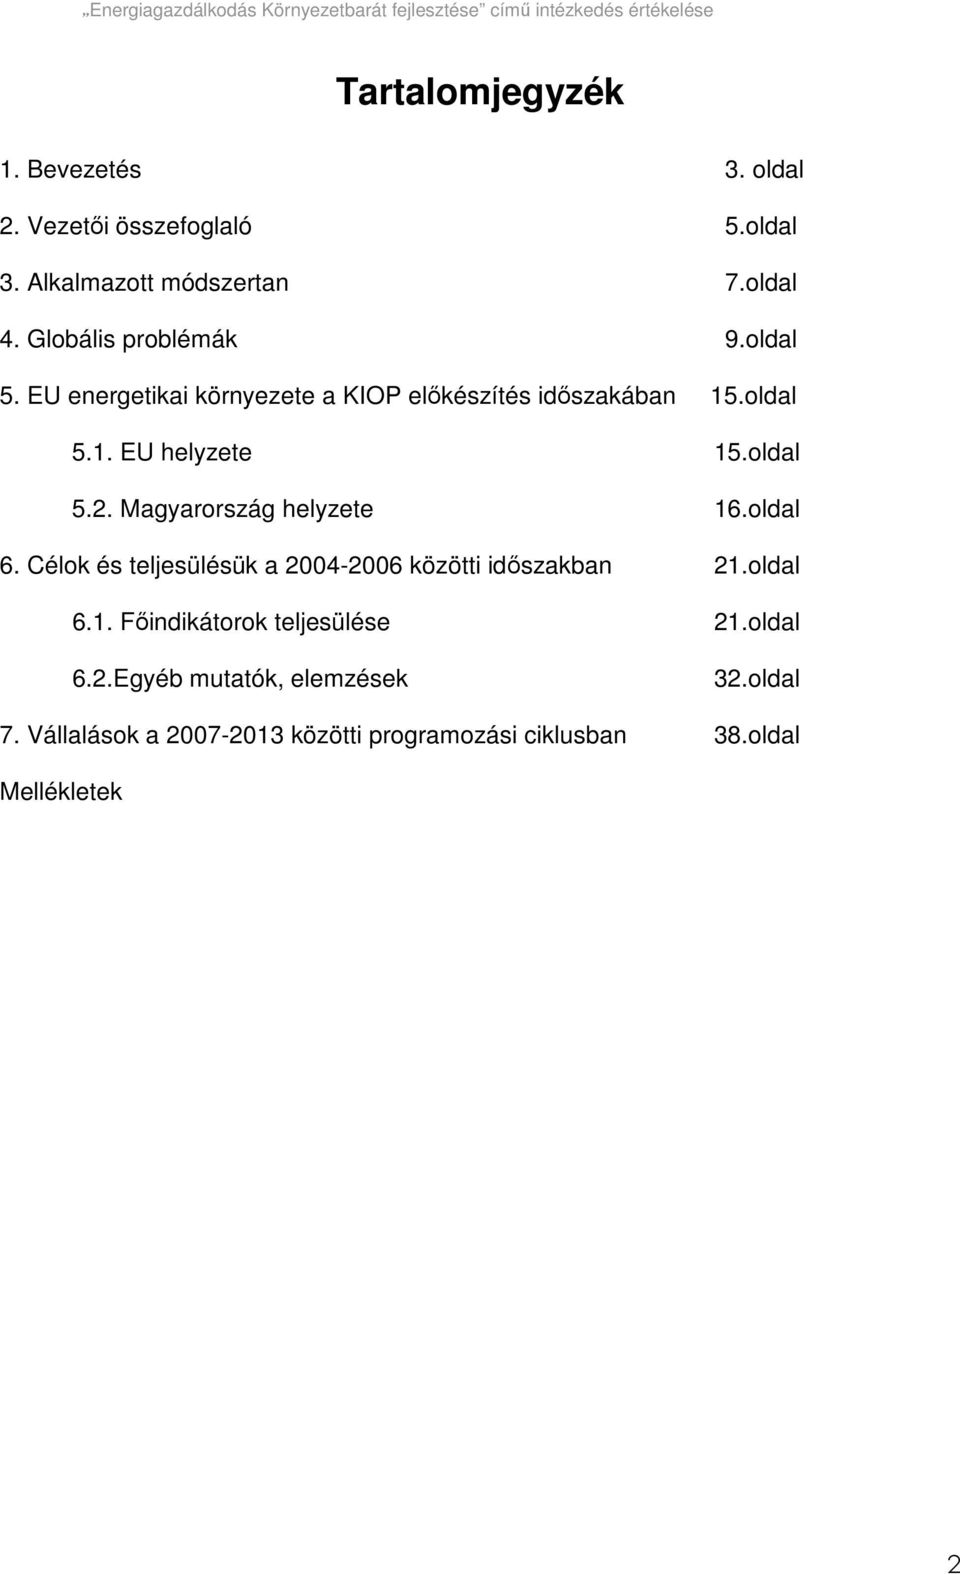 oldal 5.2. Magyarország helyzete 16.oldal 6. Célok és teljesülésük a 2004-2006 közötti idıszakban 21.oldal 6.1. Fıindikátorok teljesülése 21.